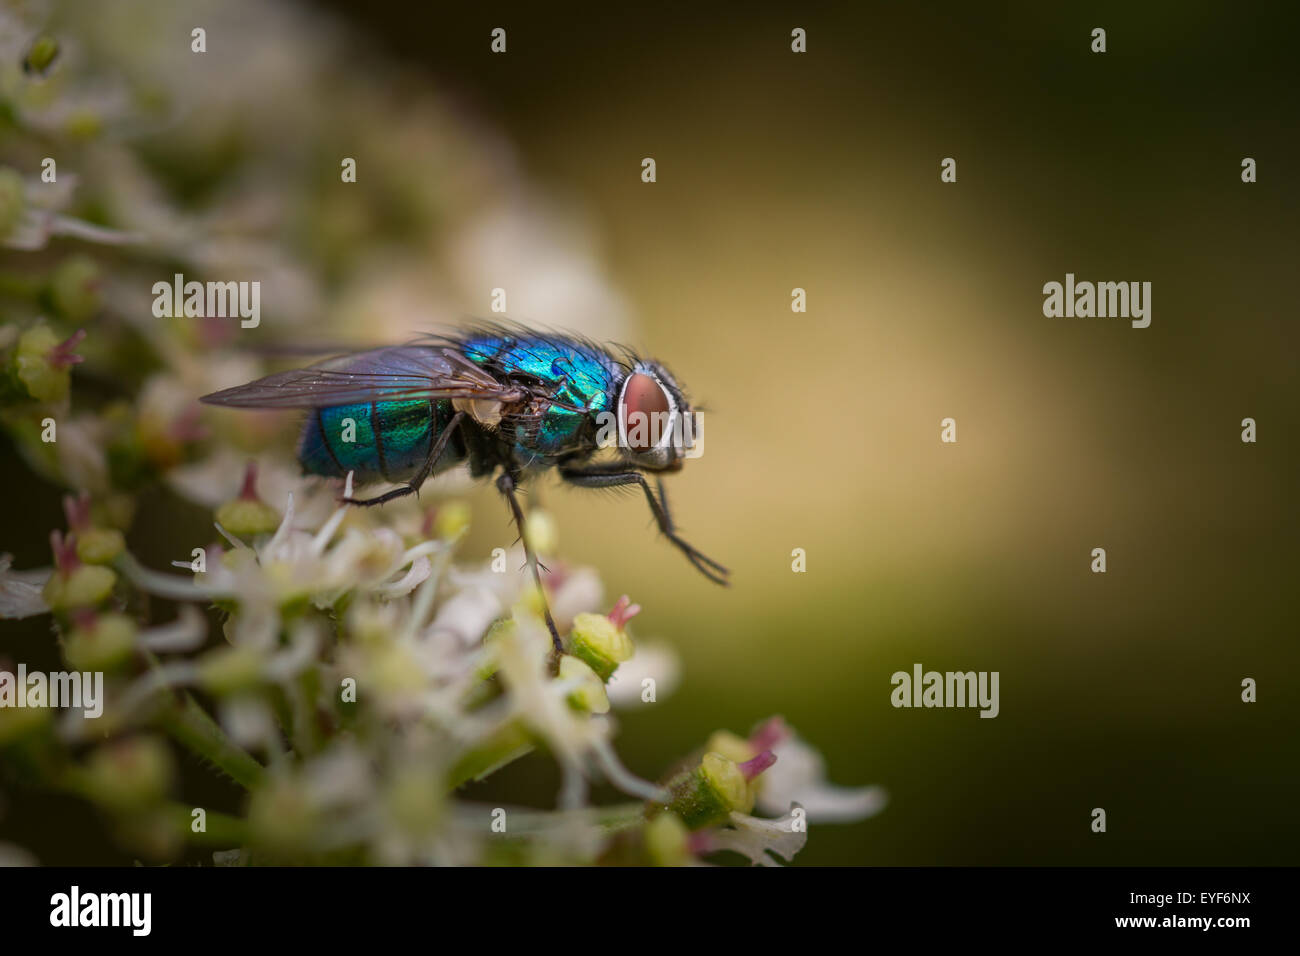 Greenbottle fly (lucilia) montrant ses couleurs irisées Banque D'Images